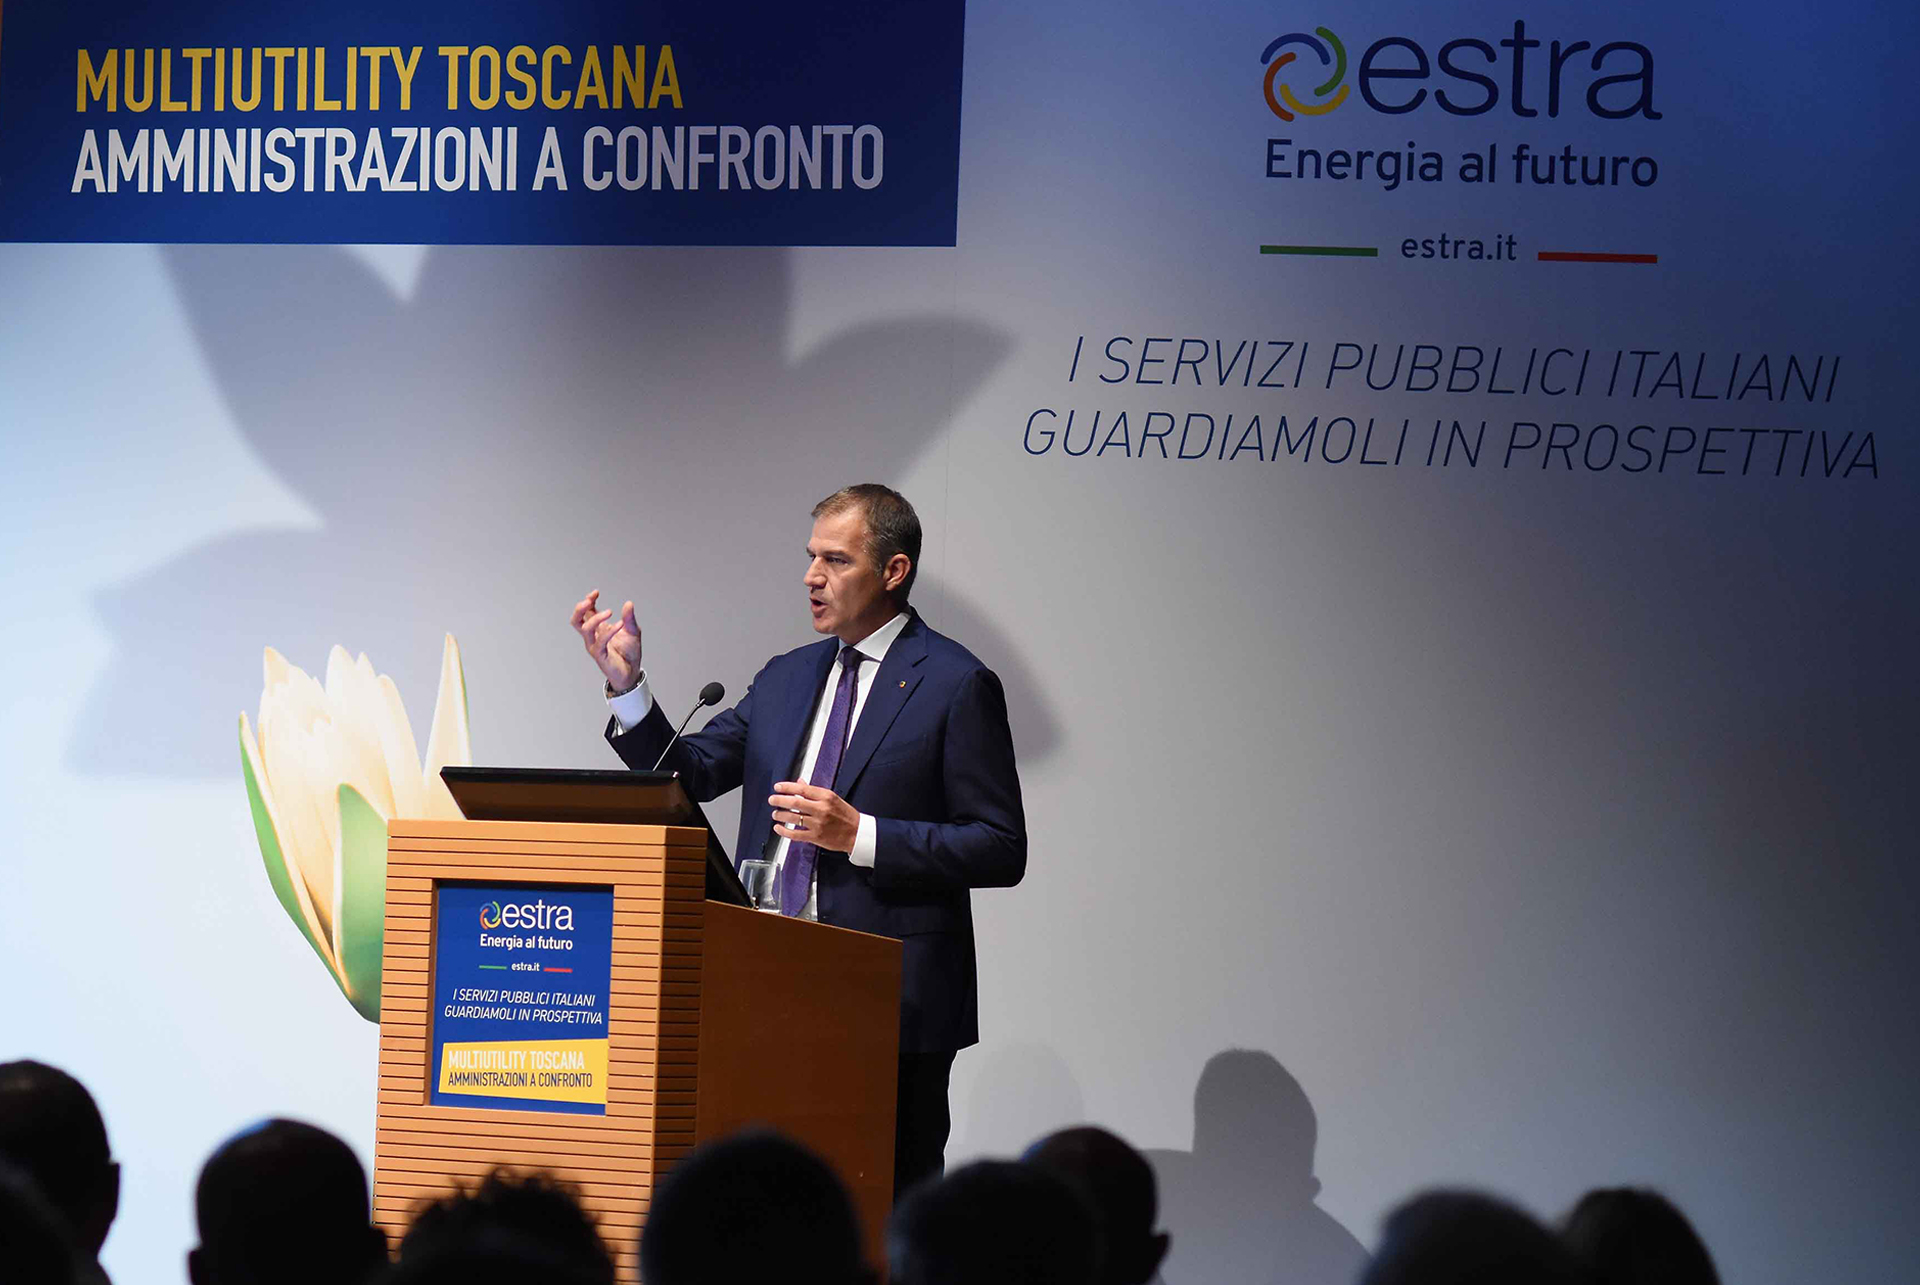 Estra, Evento “Multiutility Toscana”